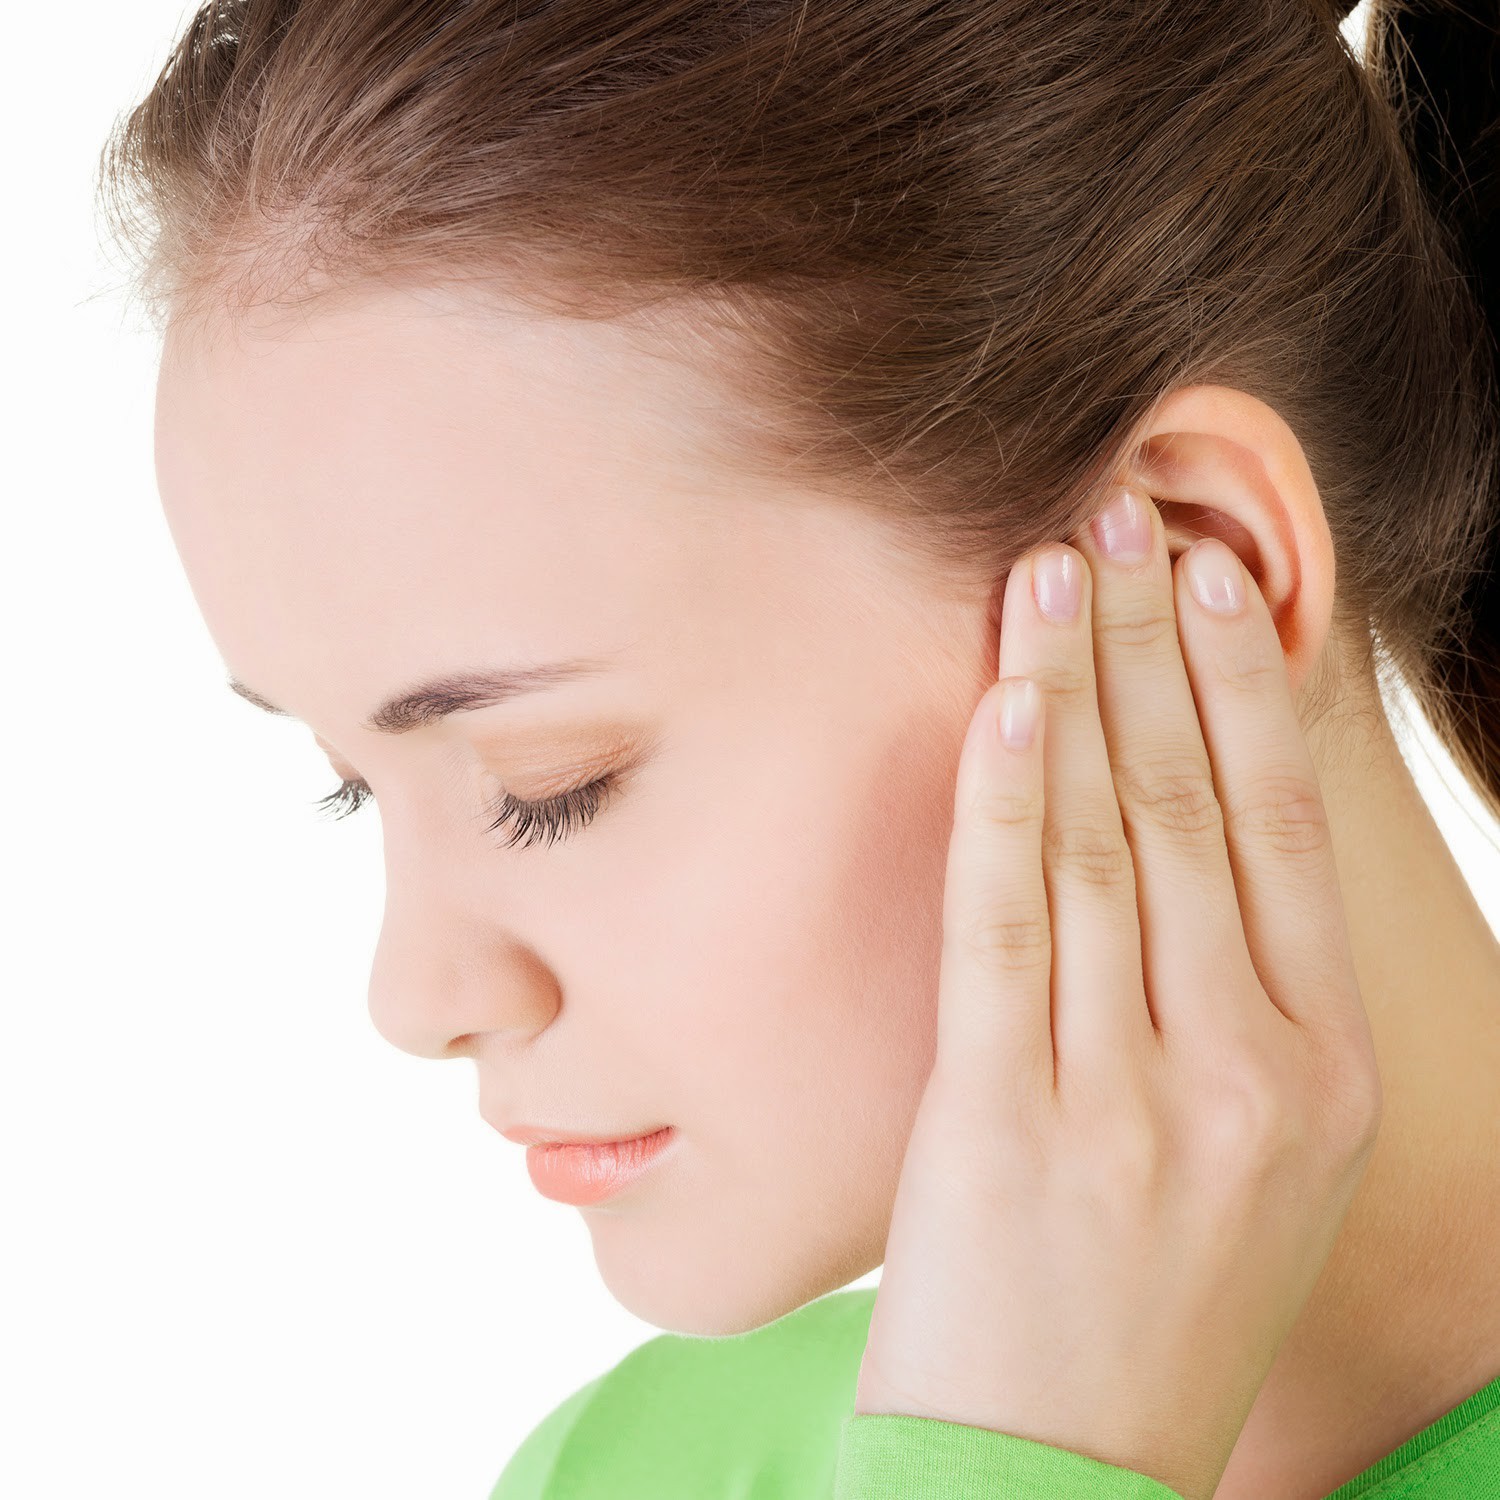 Bạn đã biết nguyên nhân gây viêm tai ngoài chưa? - Ảnh 1.